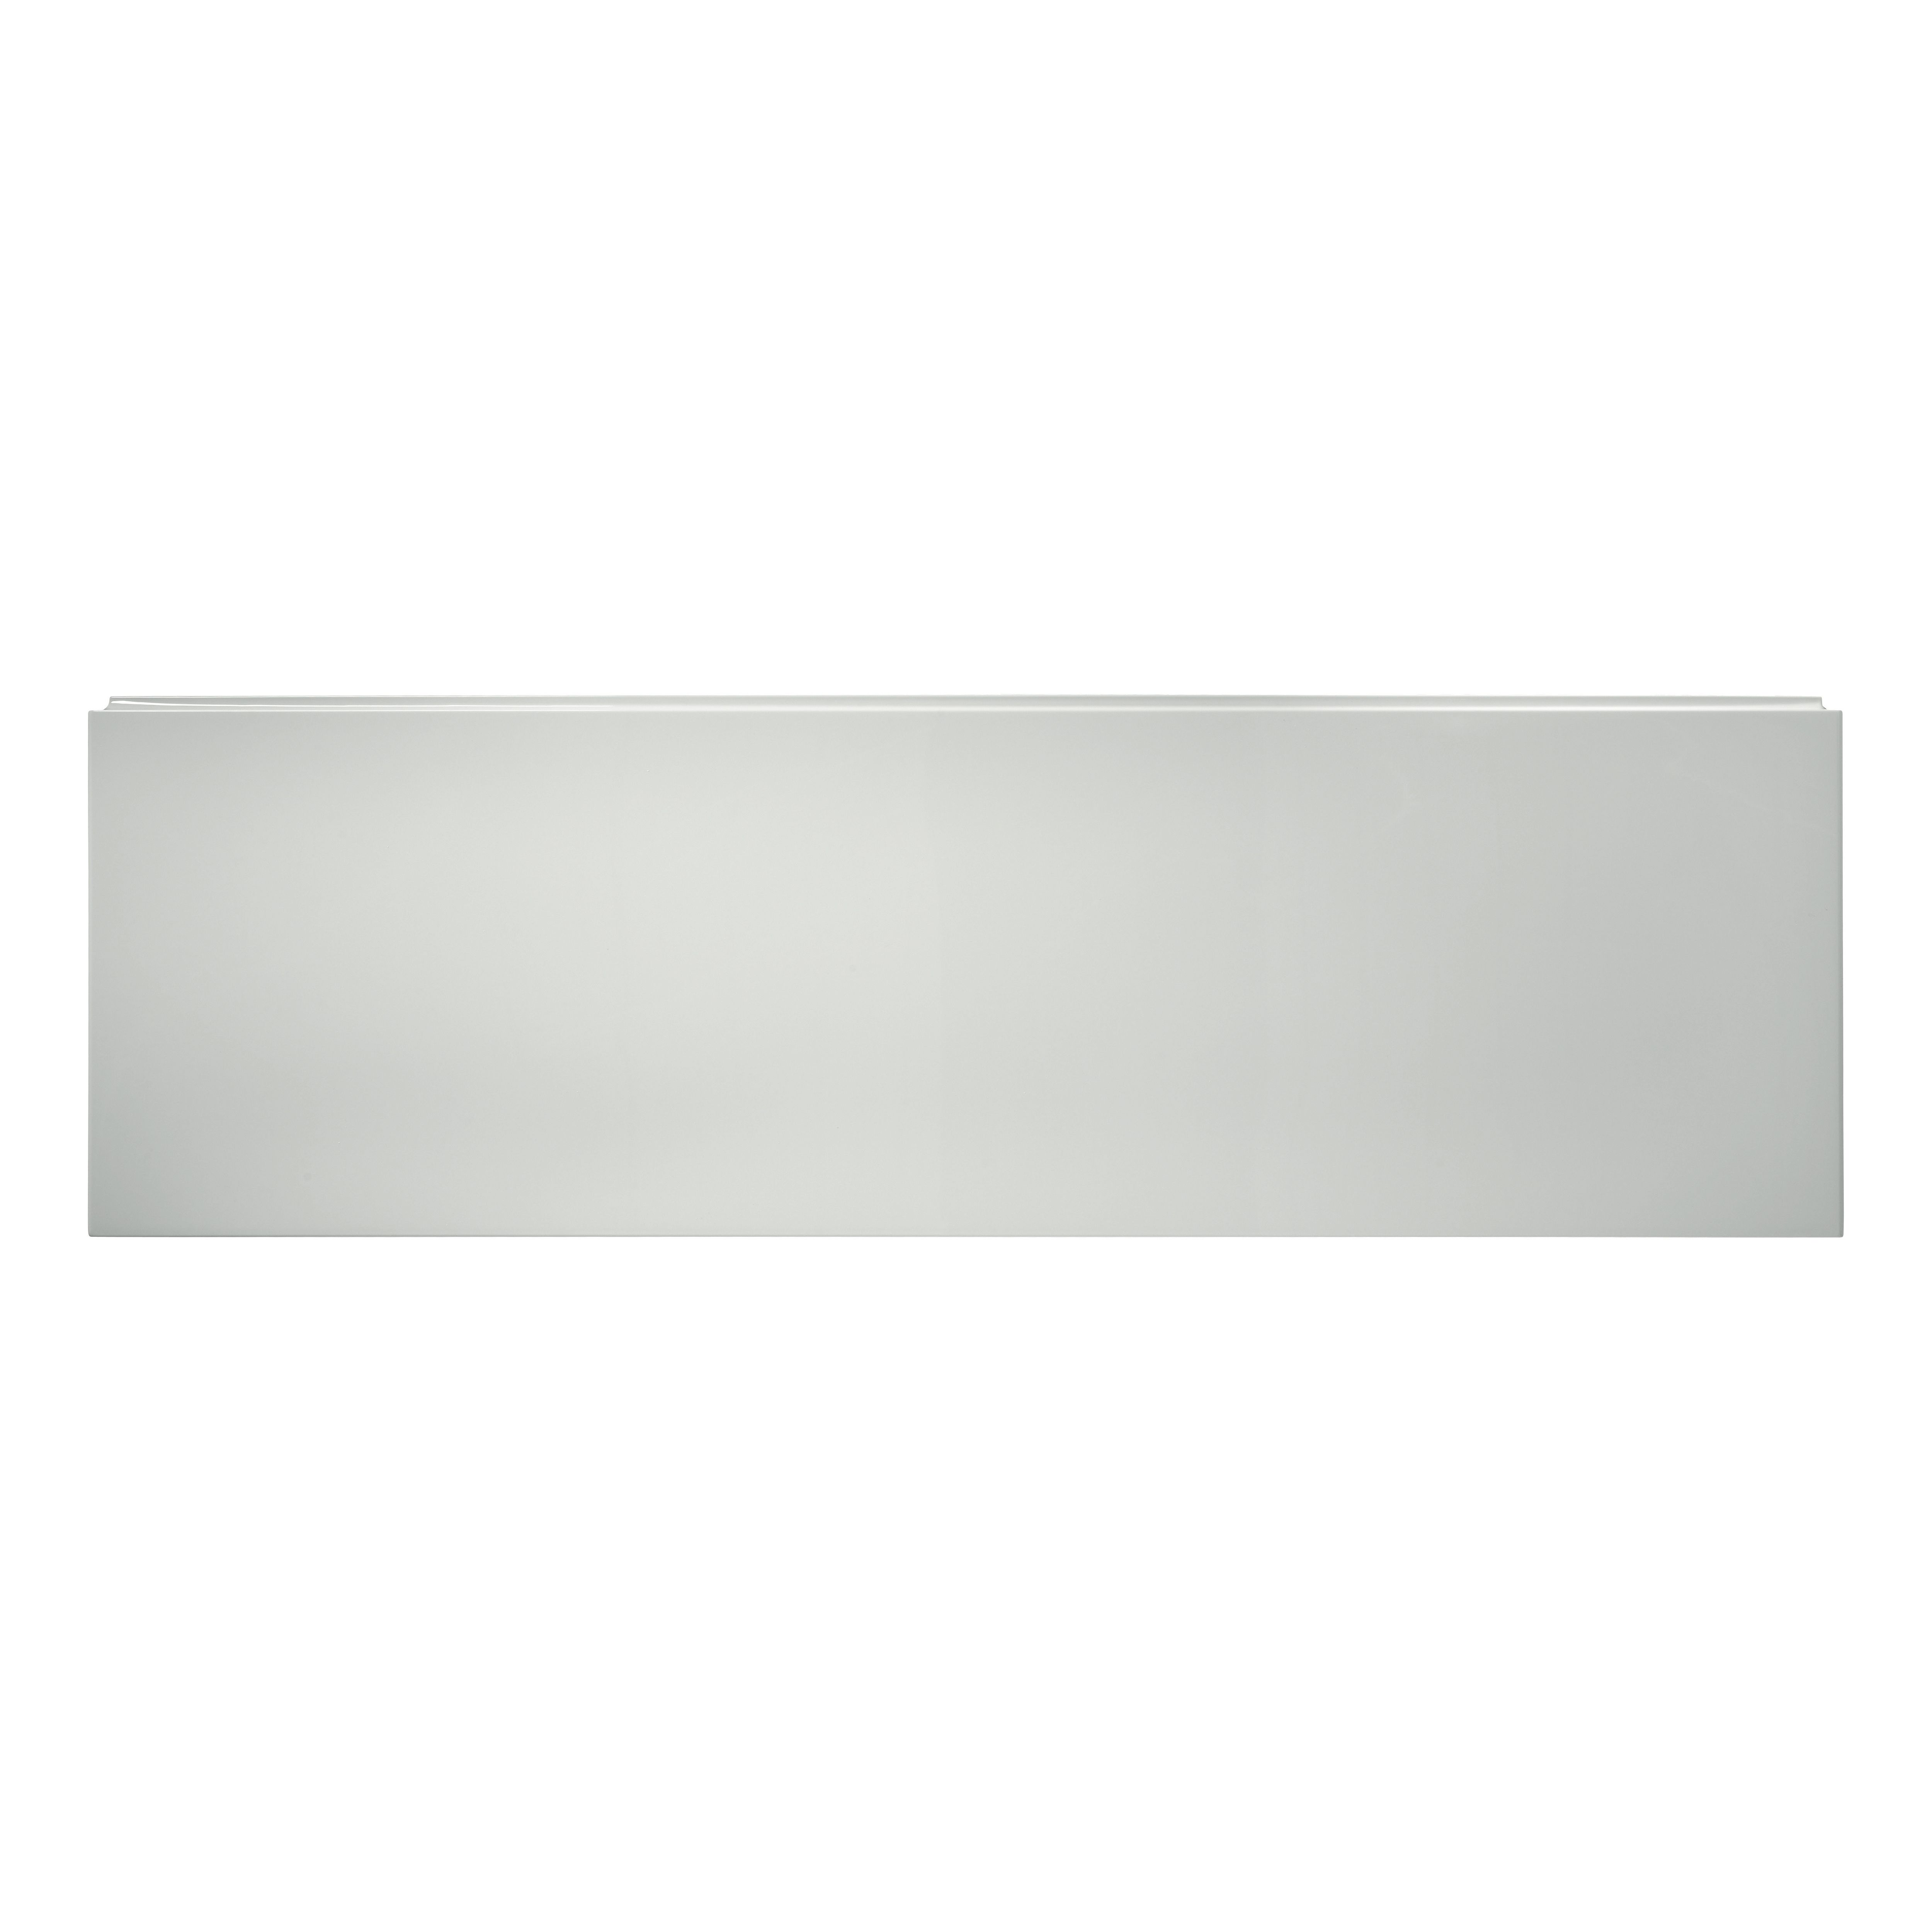 Ideal Standard Unilux Matt White Left or right-handed Rectangular Front Bath panel (H)51cm (W)170cm